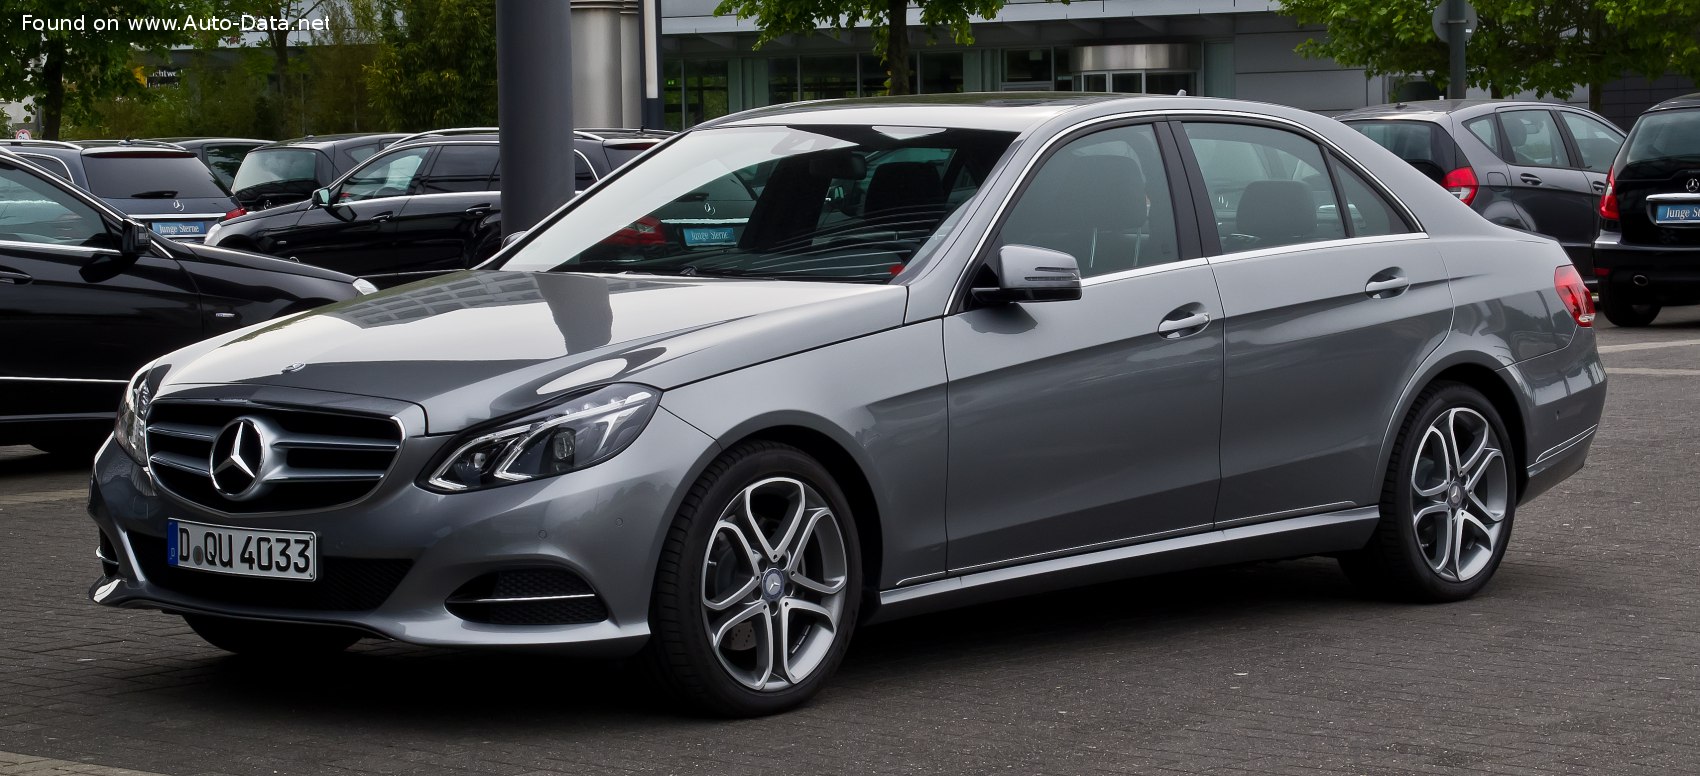 https://www.auto-data.net/images/f76/Mercedes-Benz-E-class-W212-facelift-2013.jpg